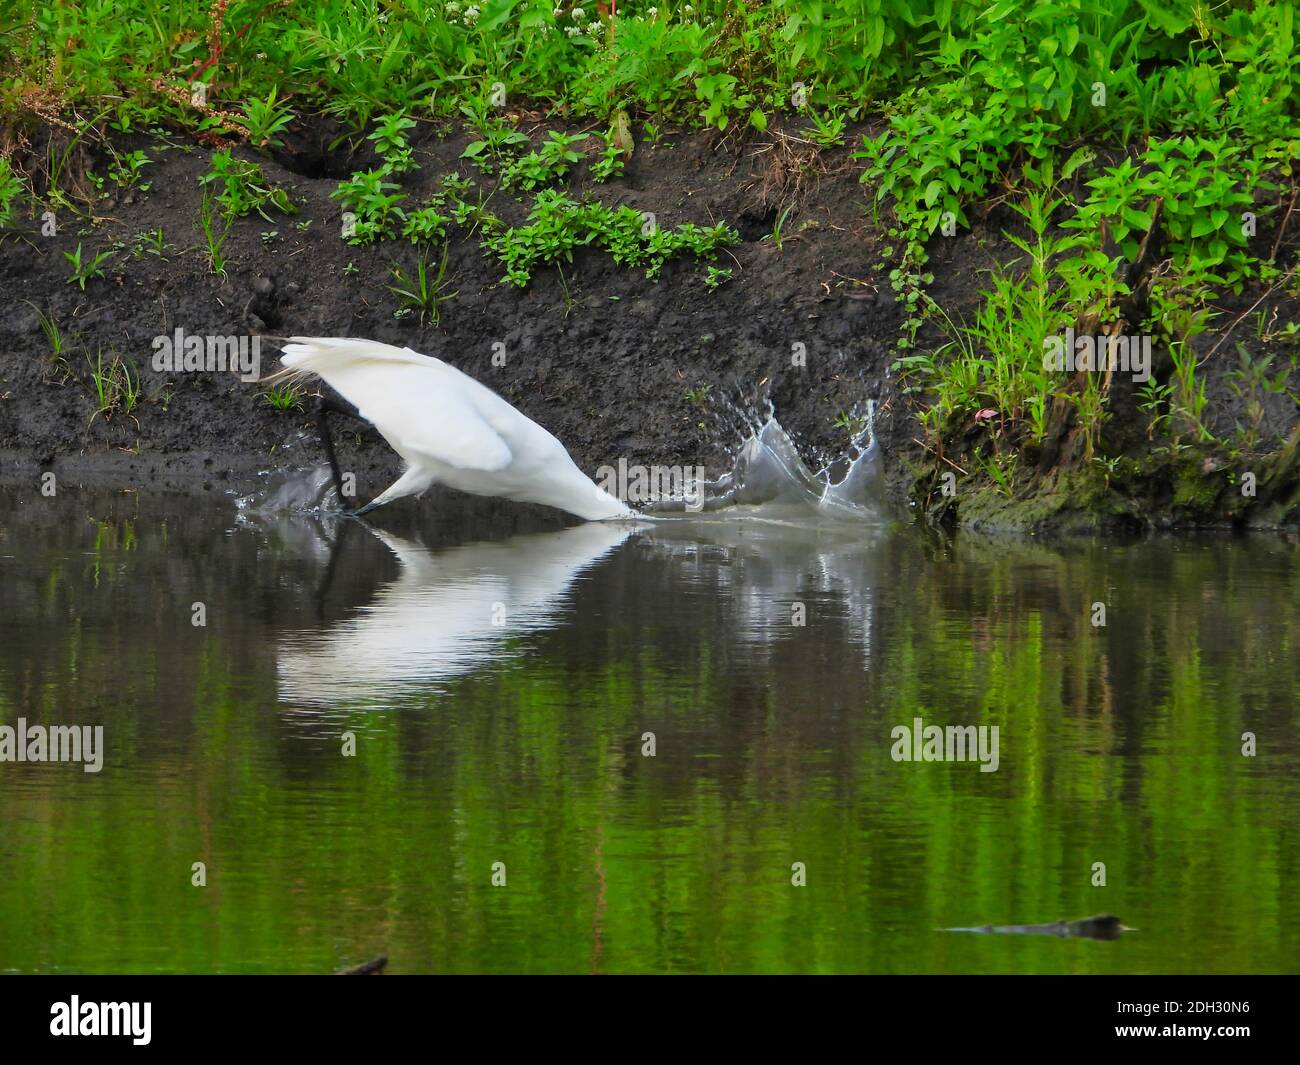 Ein großer Reiher Vogel schlägt Wasser, während im Teich angeln Sein Kopf unter Wasser auf der Suche nach einem Fisch mit Tröpfchen und Reflexion in Wasser und grüne Fauna Stockfoto